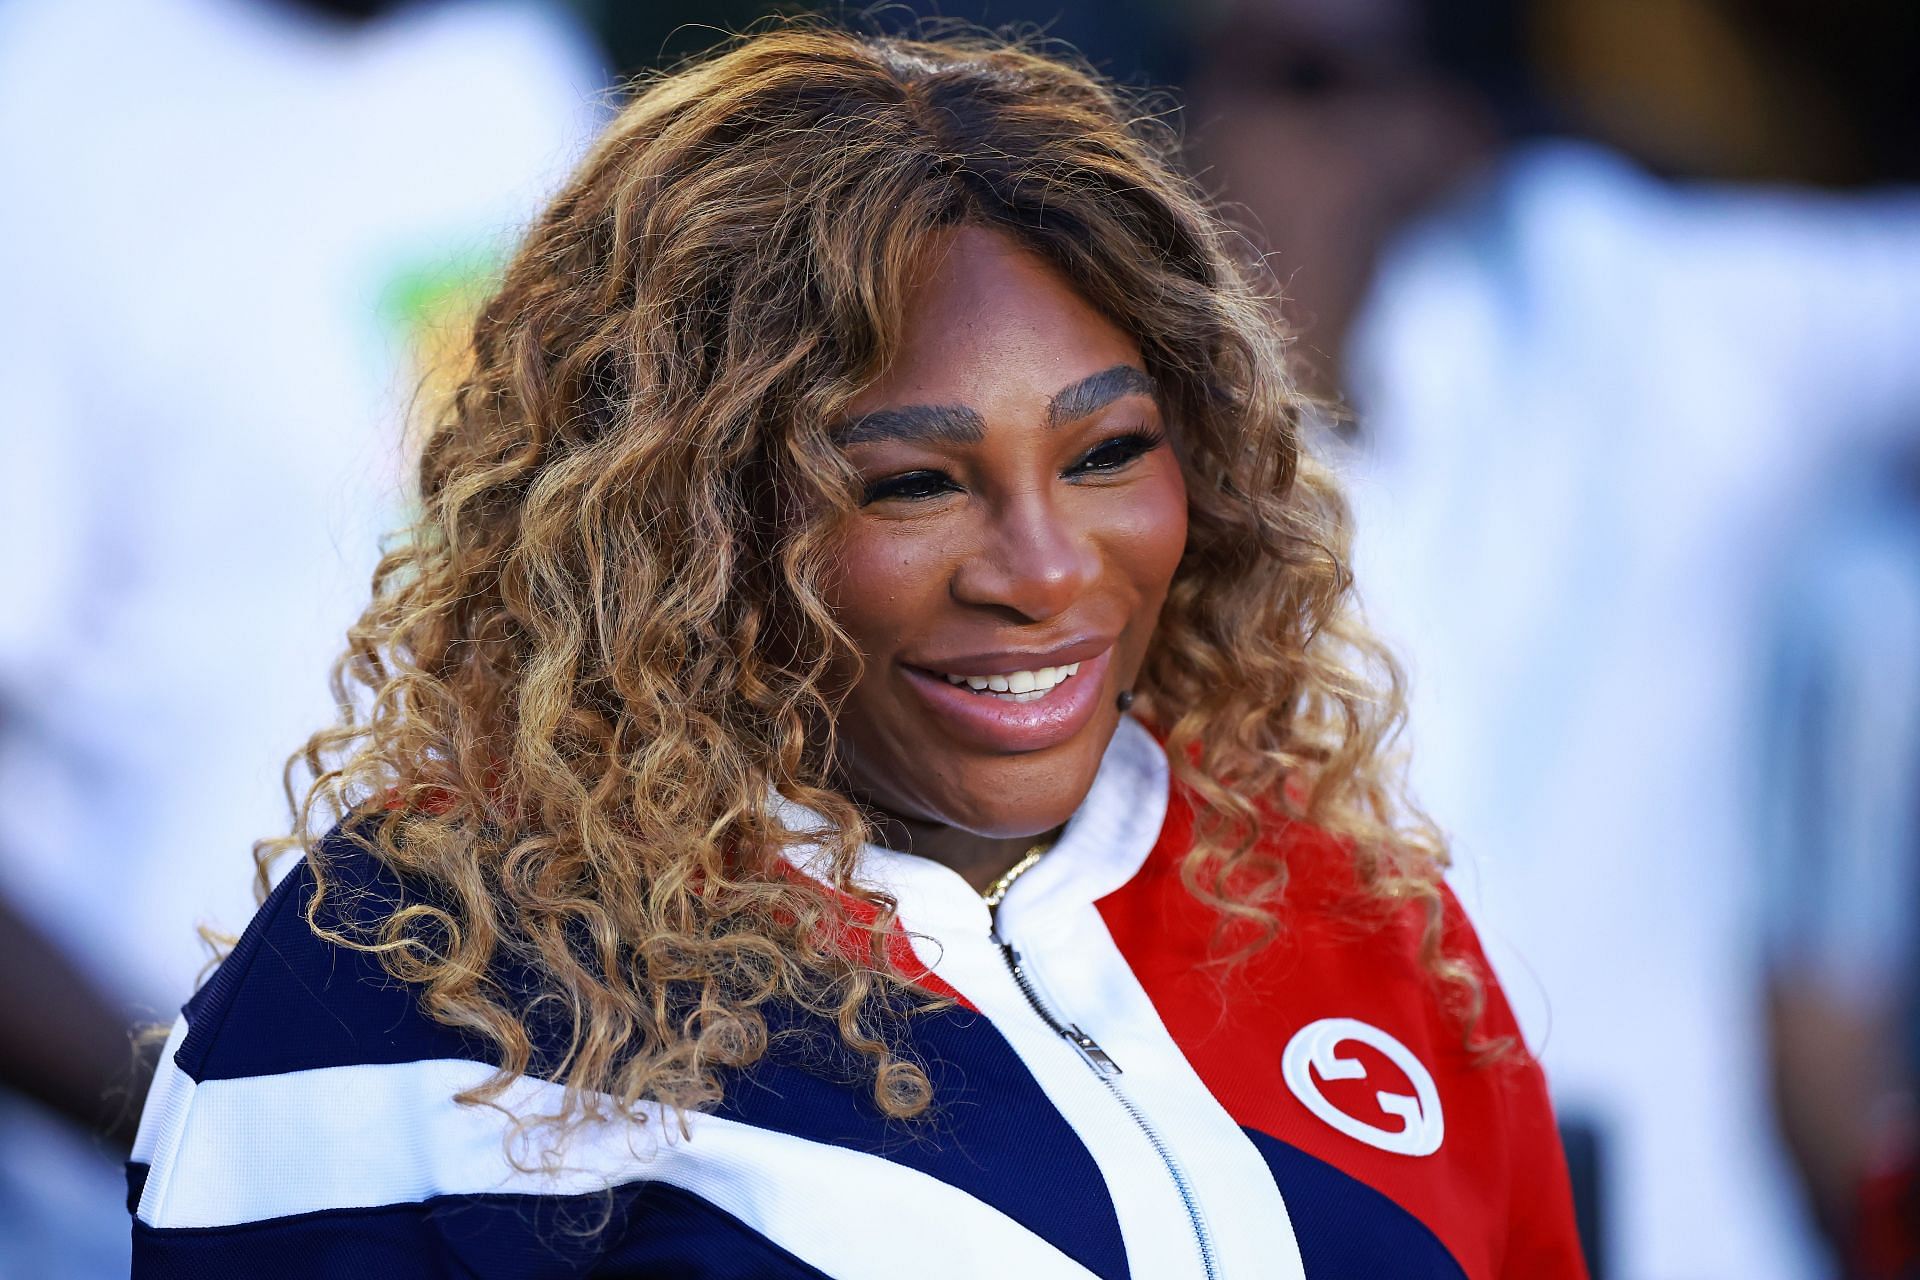 Serena Williams' 'Pre-Push Party' Spa Day